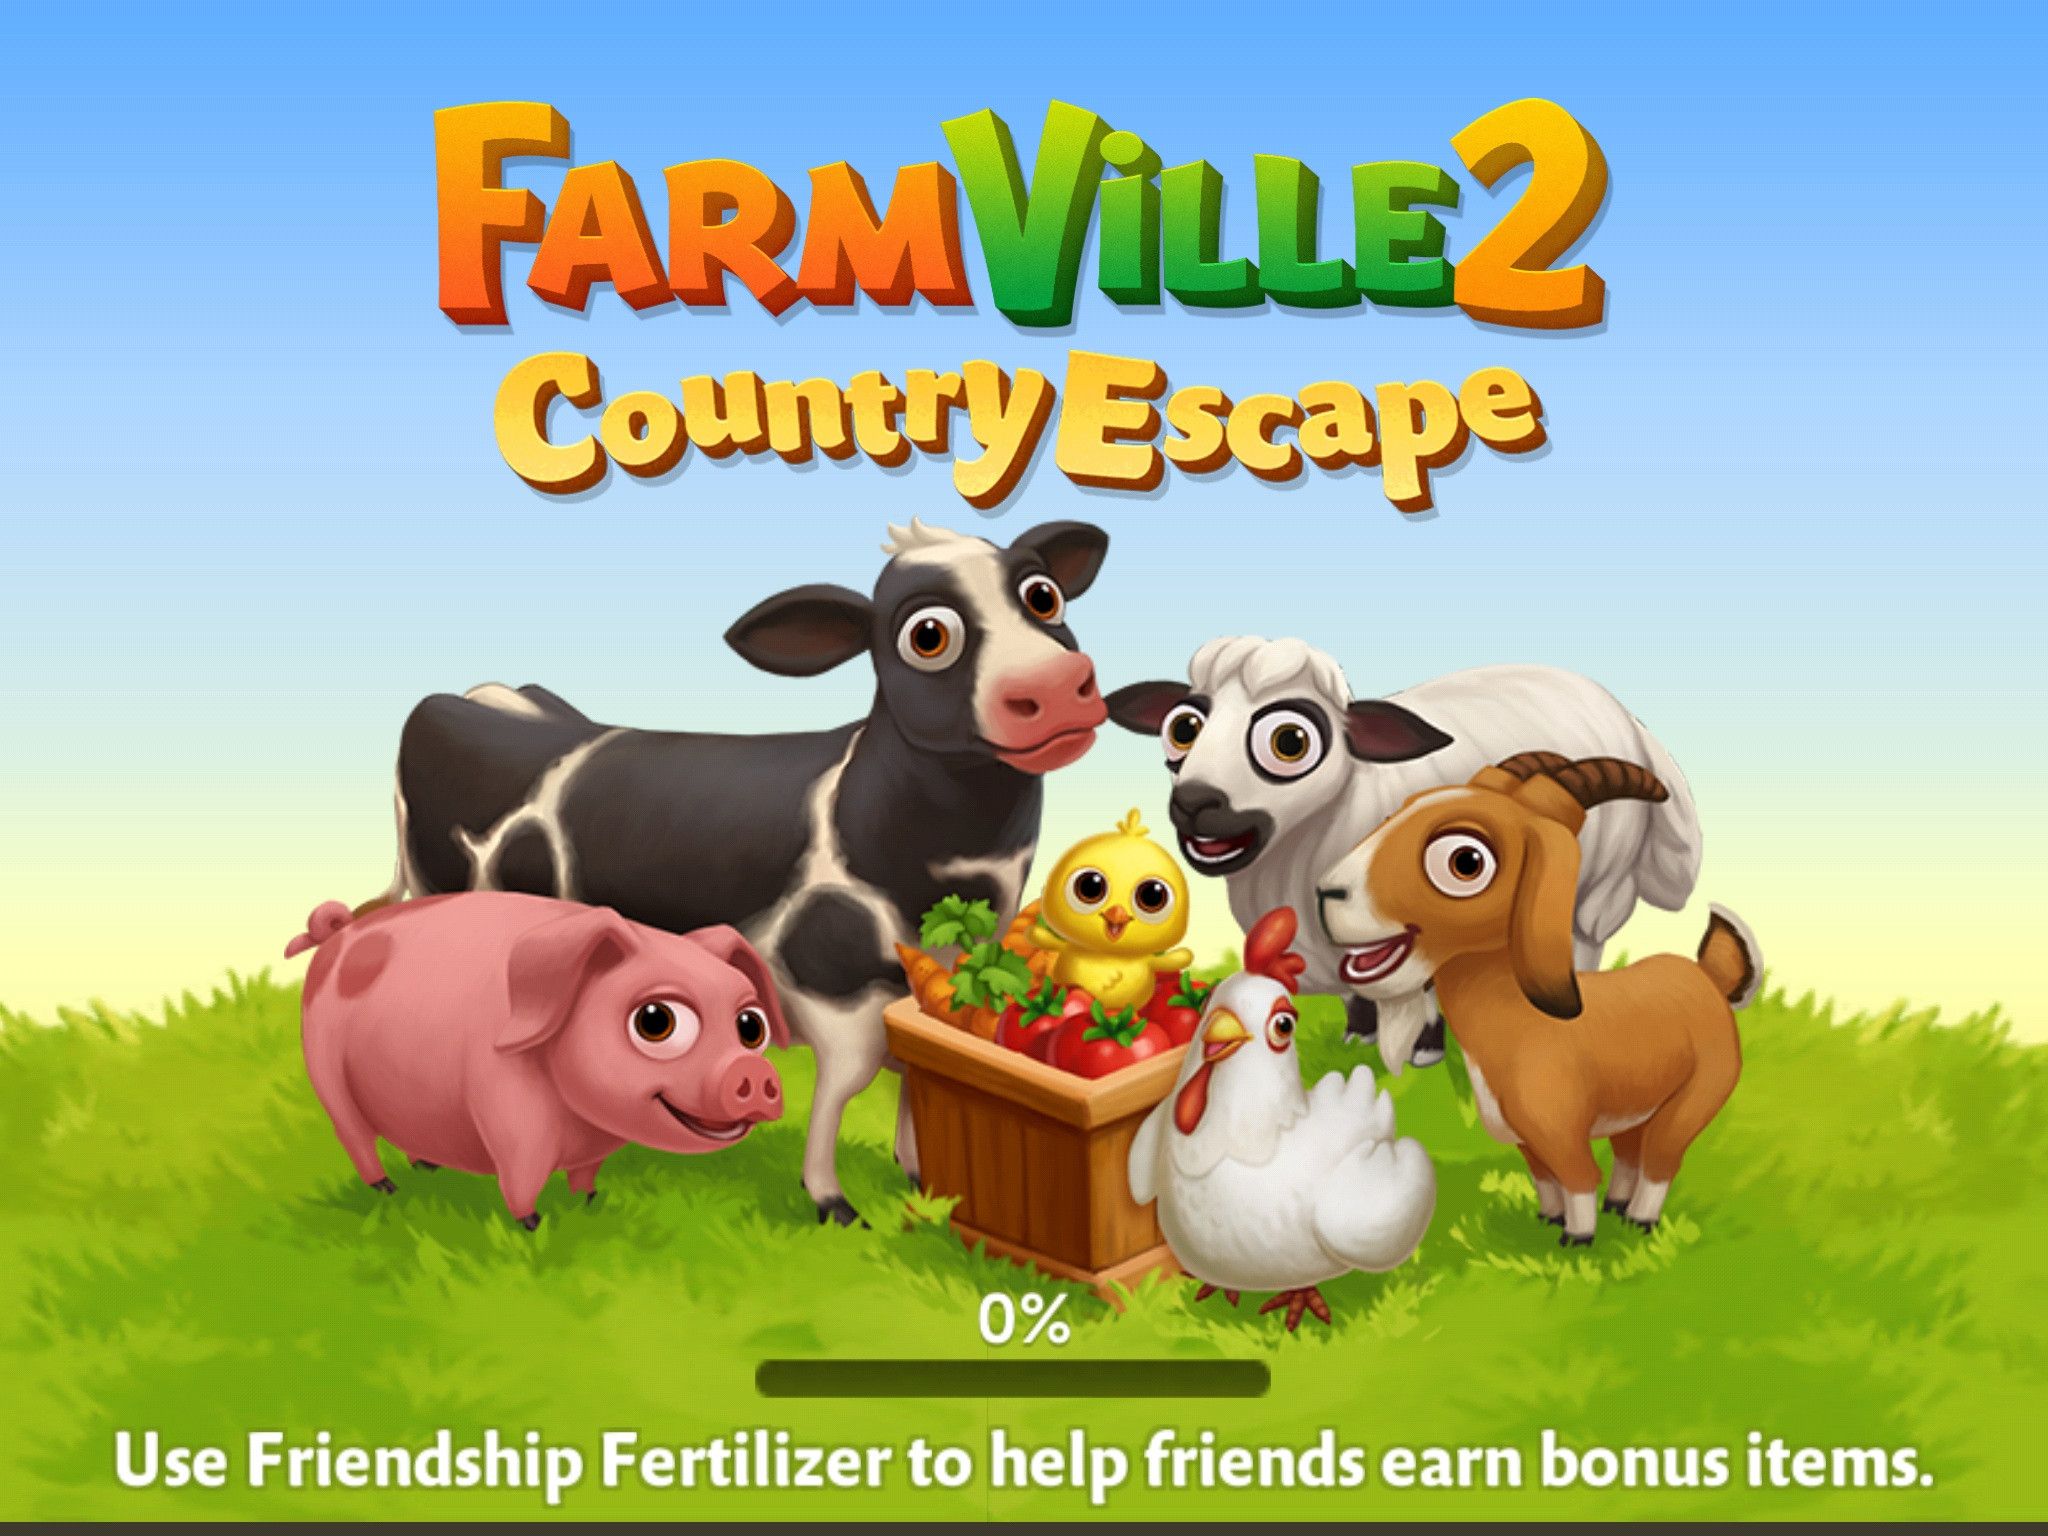 farmville 2 country escape key cheat